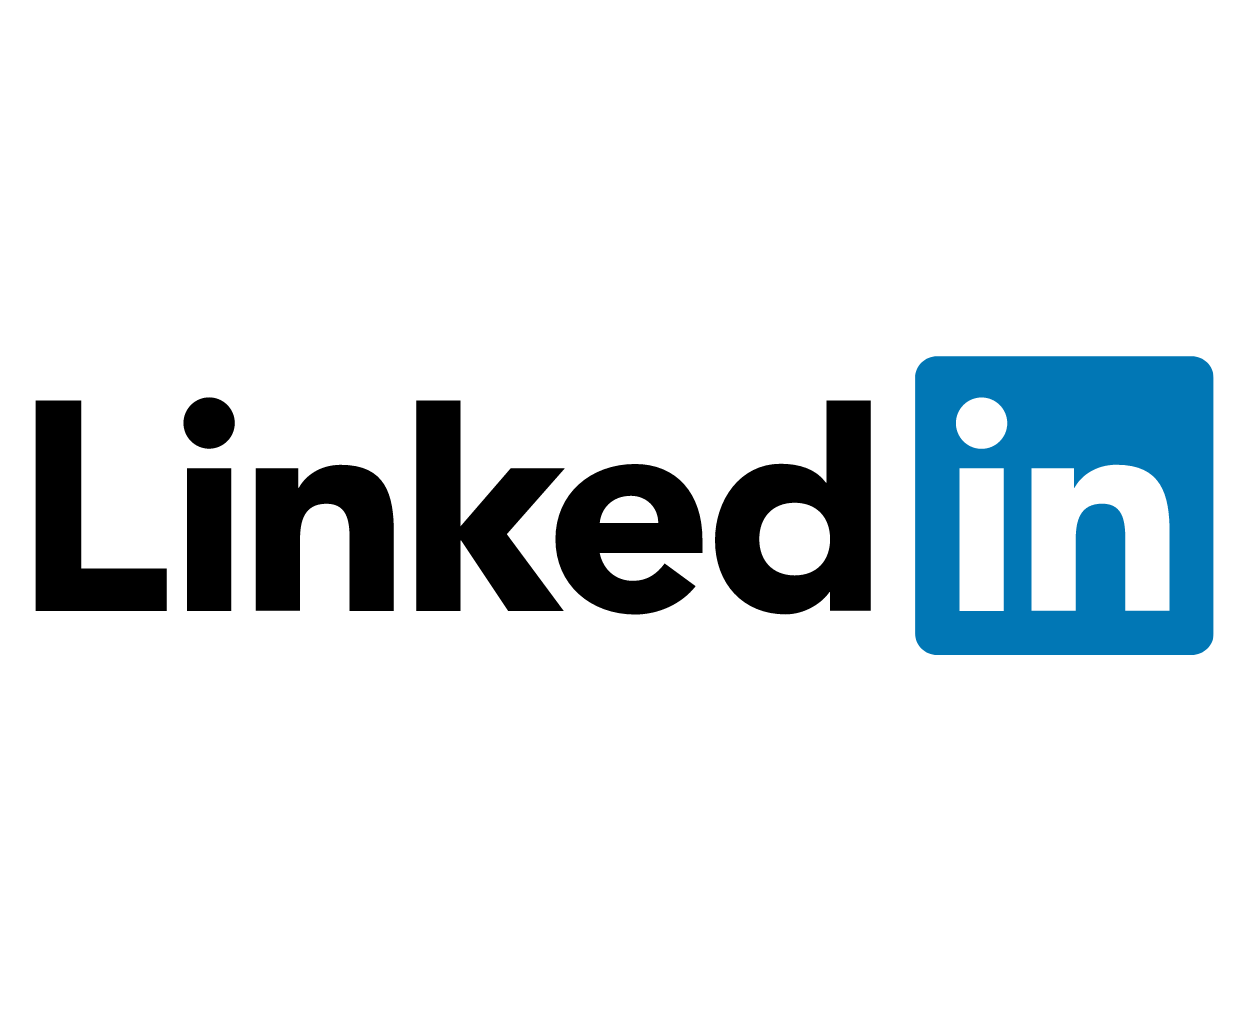 Digitalni marketing tečaj  LinkedIn logo.